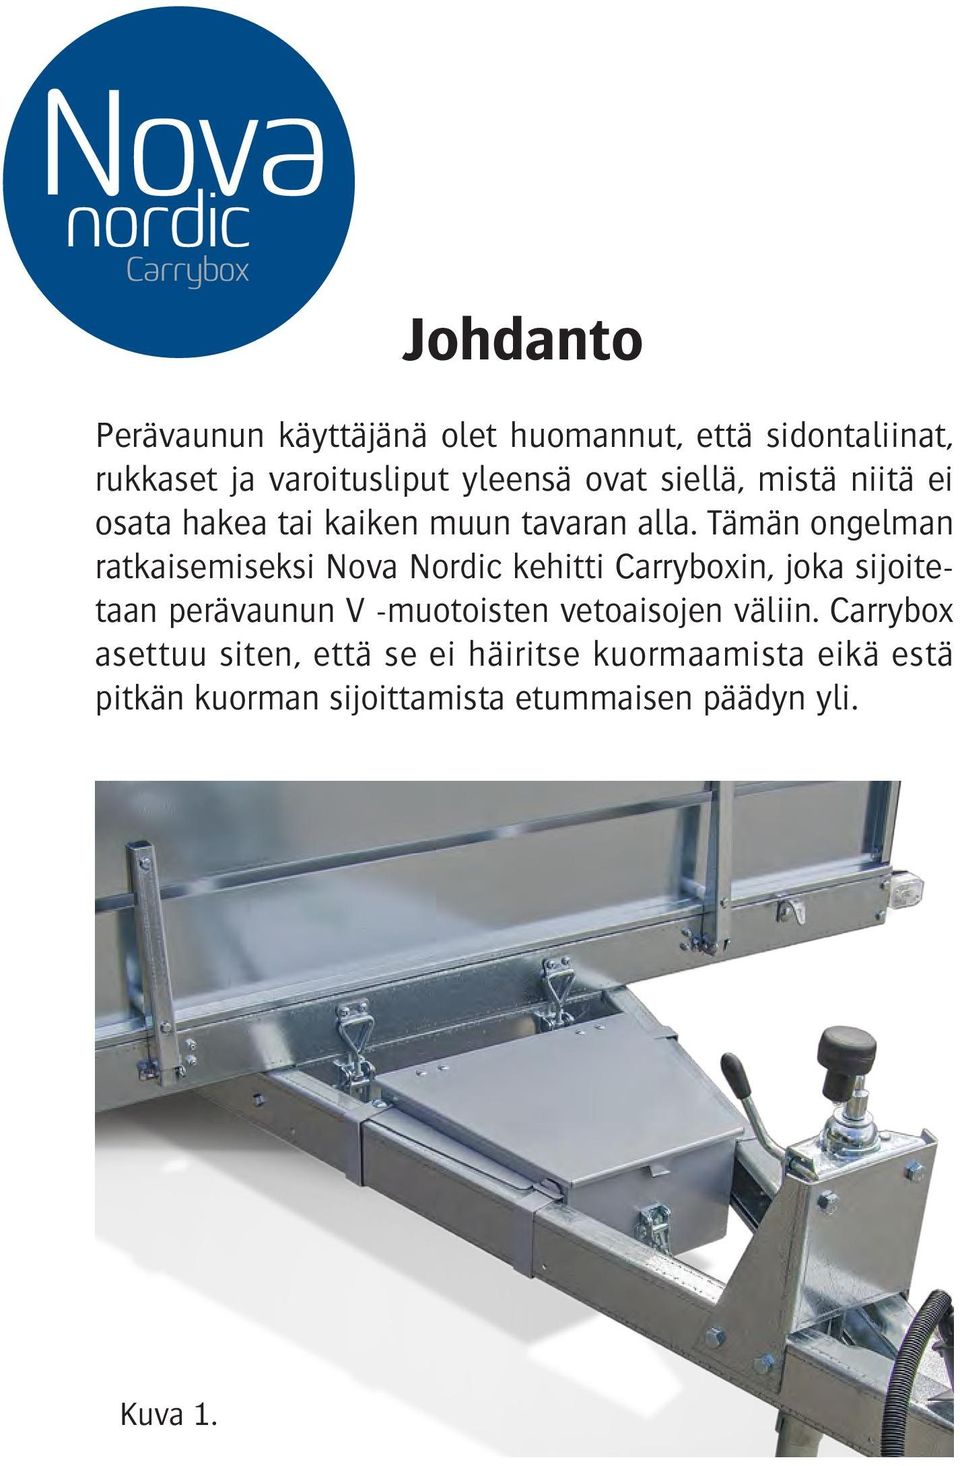 Tämän ongelman ratkaisemiseksi Nova Nordic kehitti Carryboxin, joka sijoitetaan perävaunun V -muotoisten